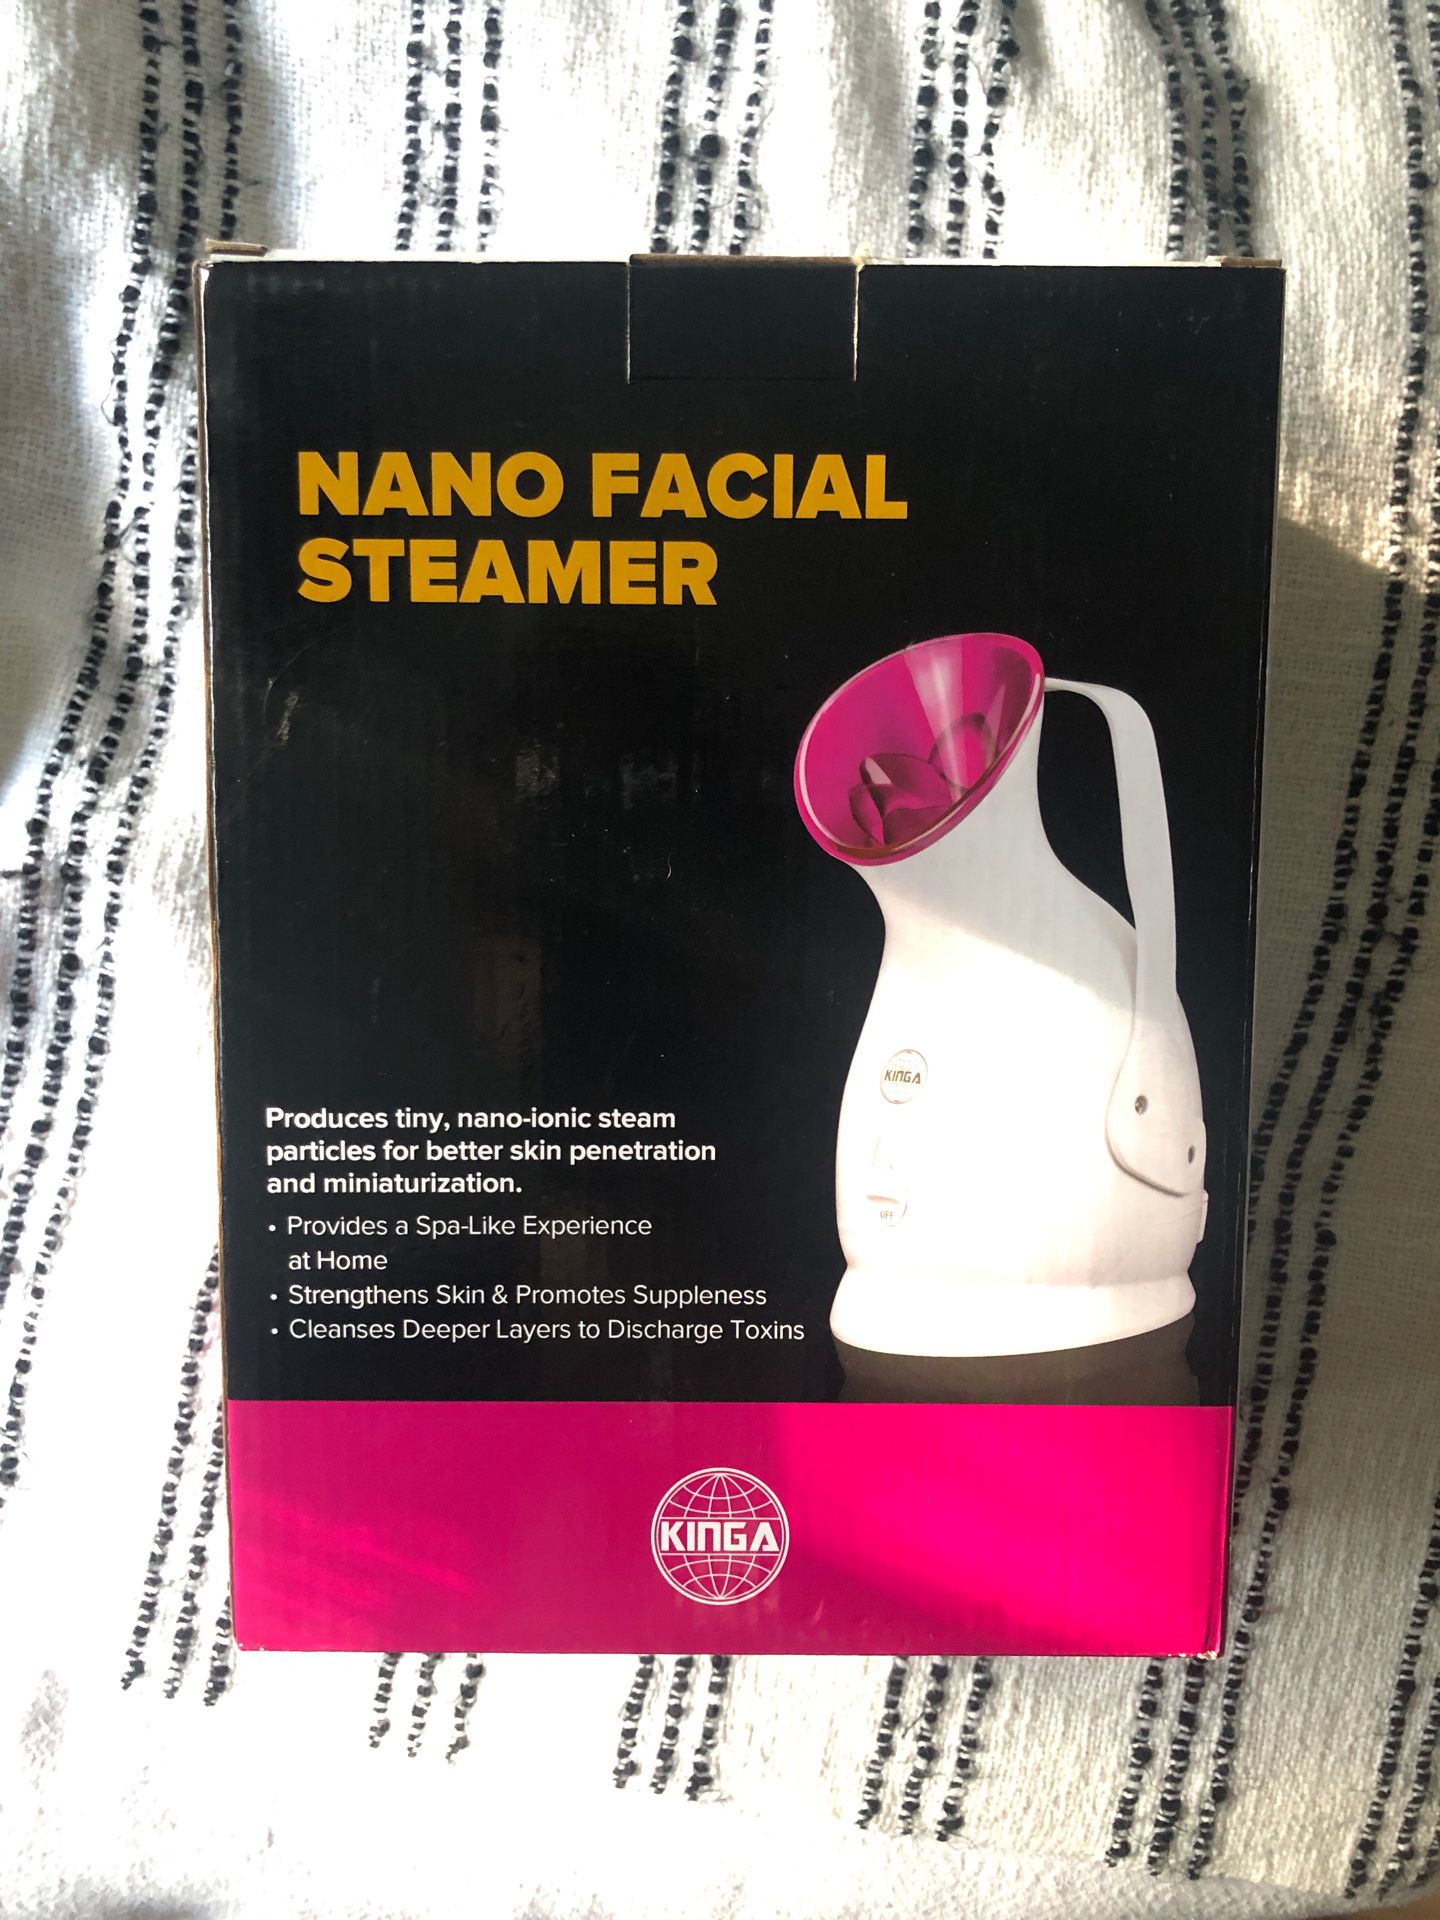 Nano facial steamer